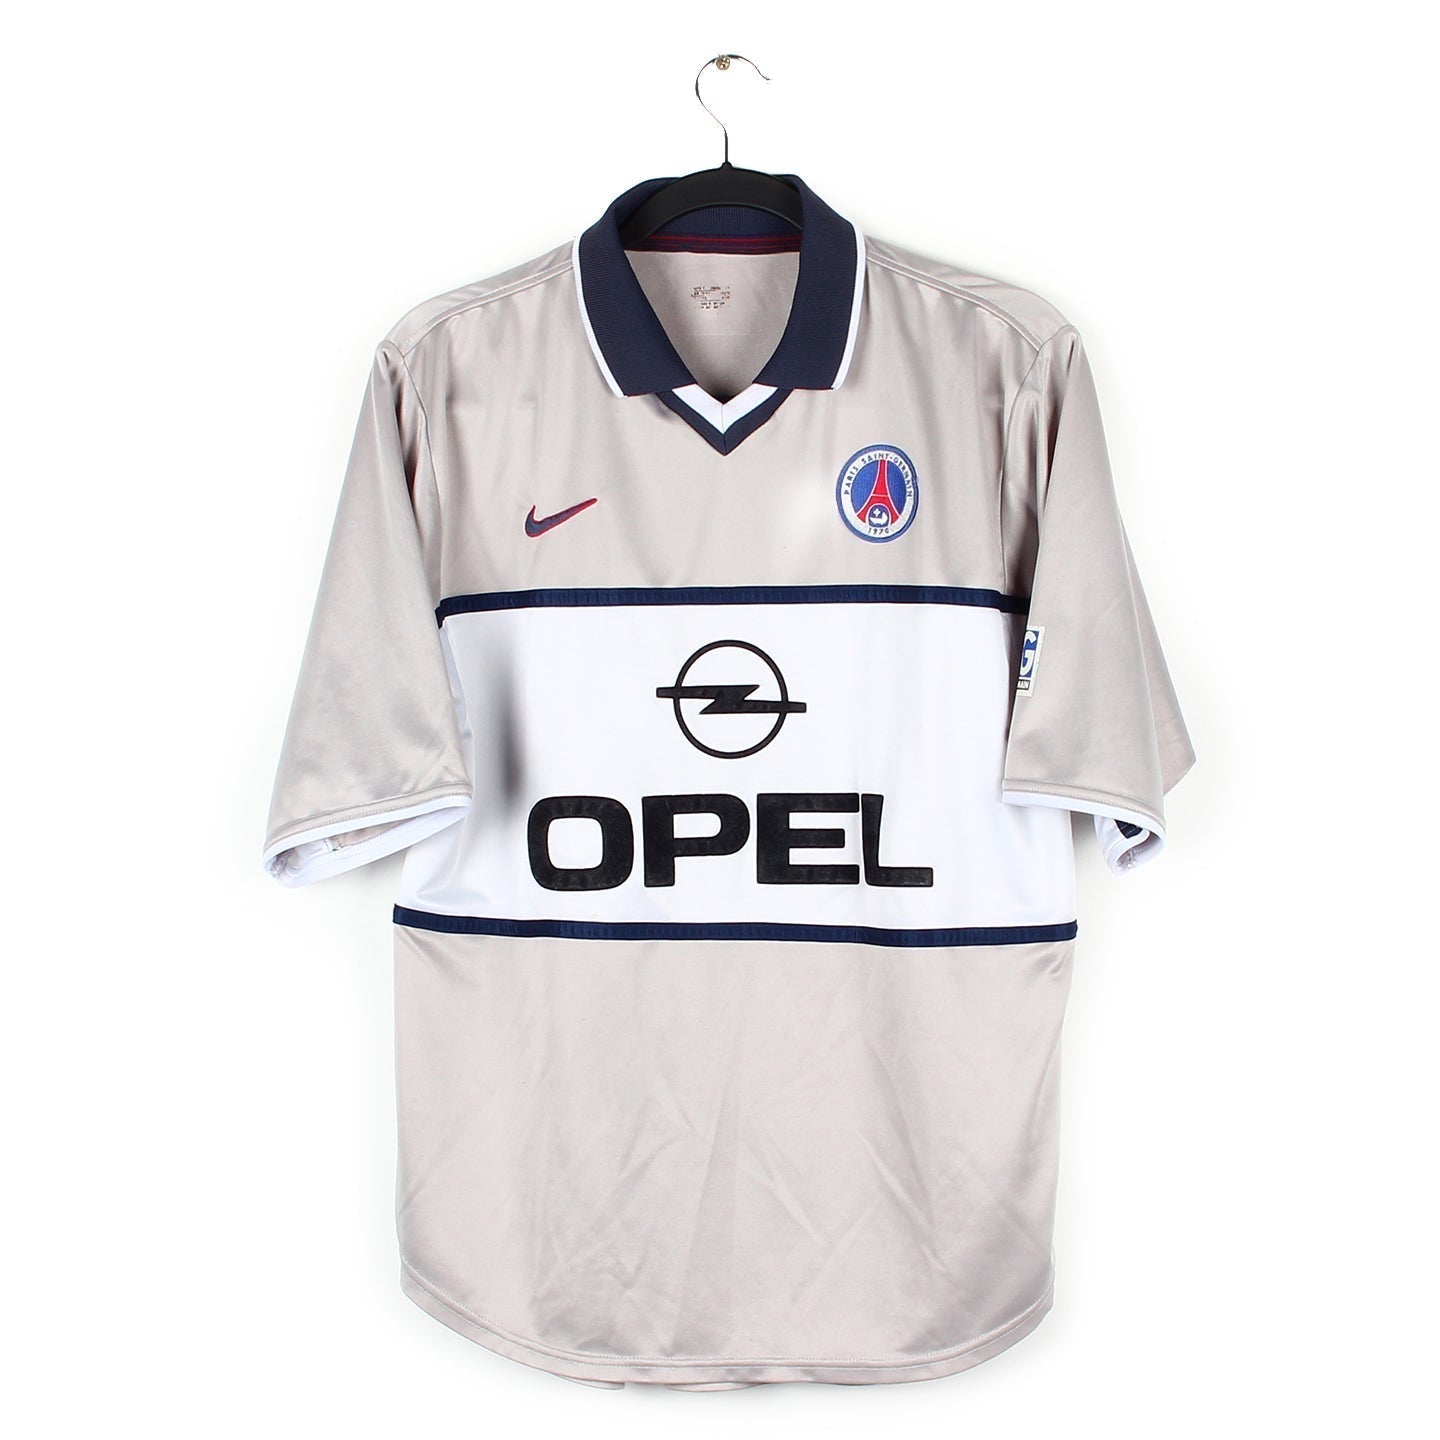 Historique des maillots du PSG : les années 2000 - PSG MAG - le